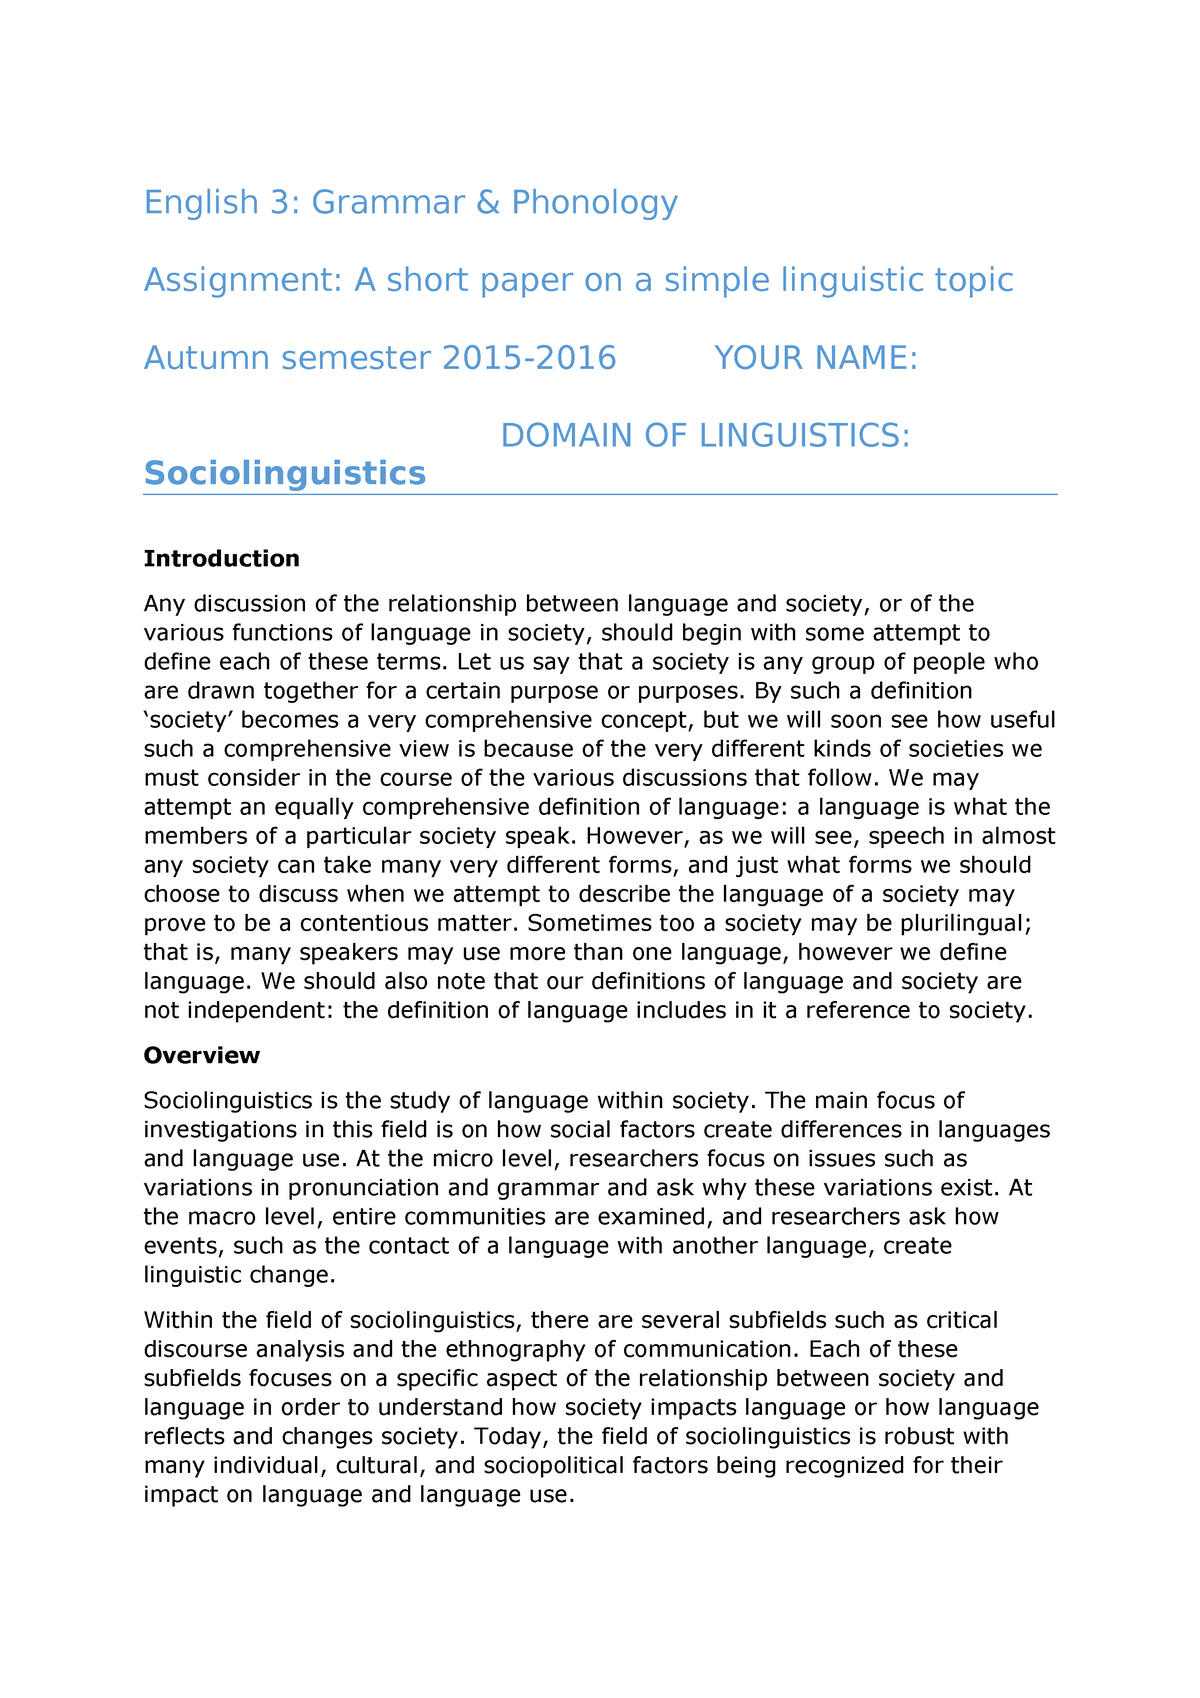 sociolinguistics term paper topics